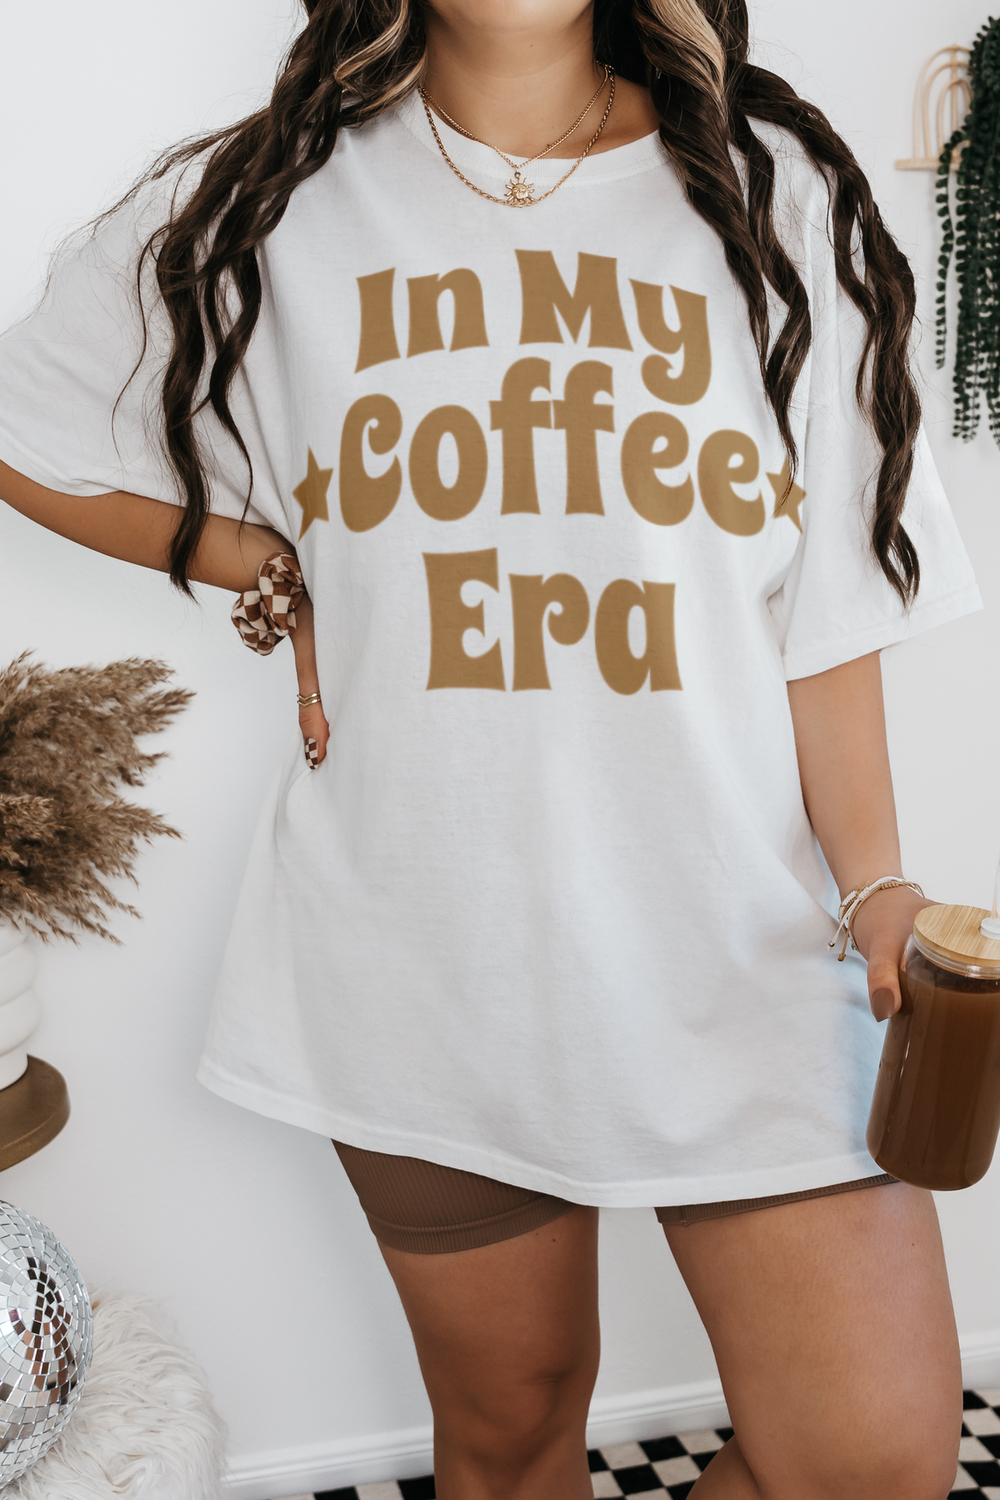 In My Coffee Era Women's Casual T-Shirt